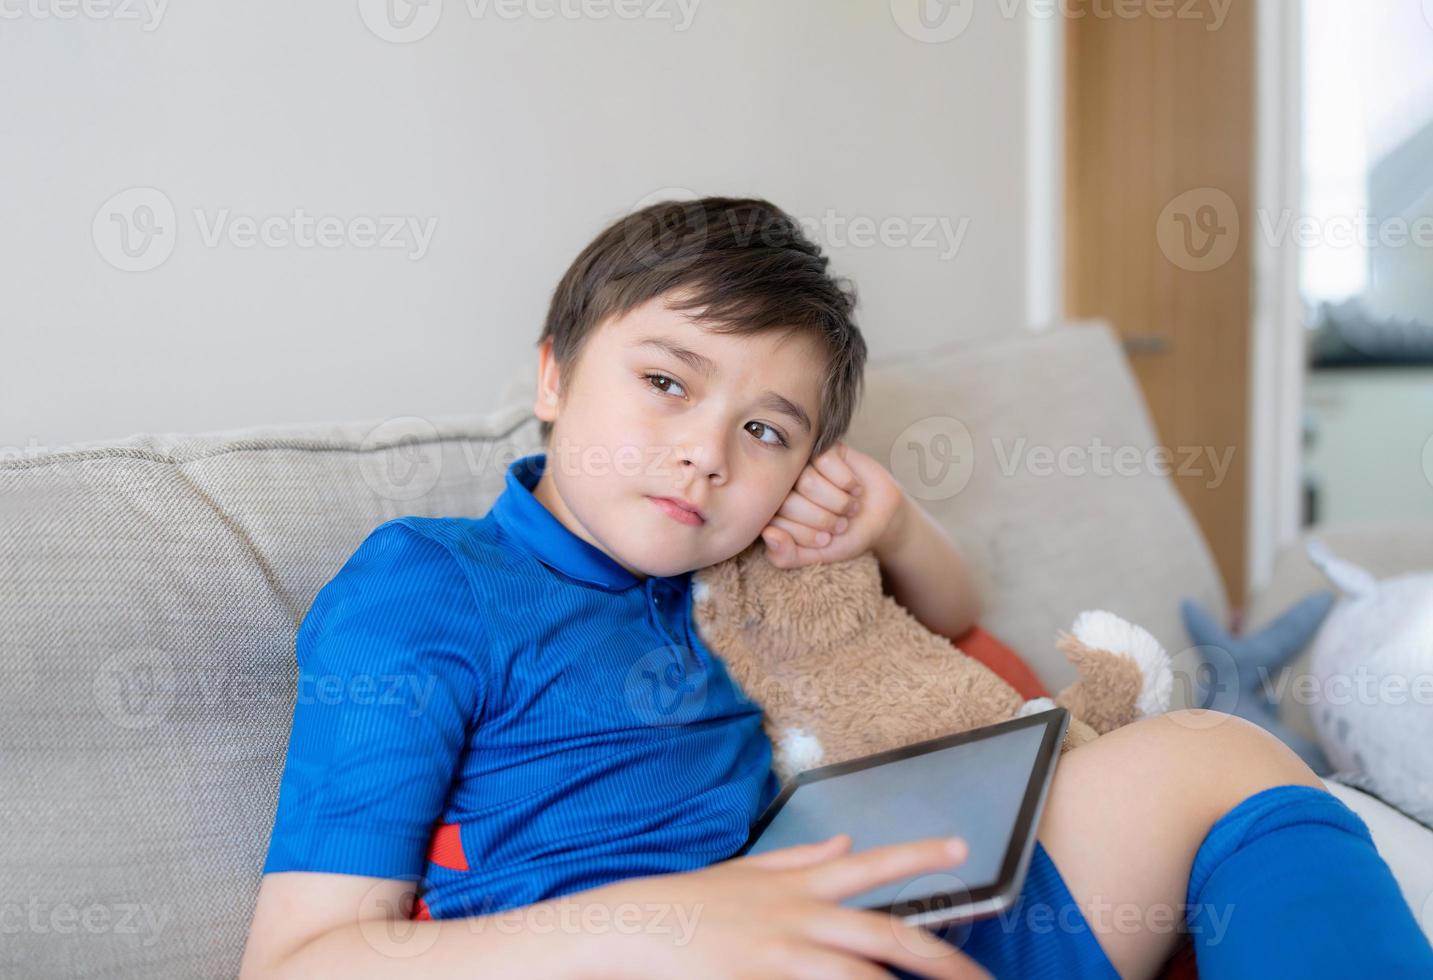 niño pequeño sosteniendo una maqueta de tableta y mirando profundamente en el pensamiento, niño jugando en línea en una libreta digital, niño escolar con ropa deportiva sentado en un sofá relajándose después de jugar fútbol o fútbol con amigos foto